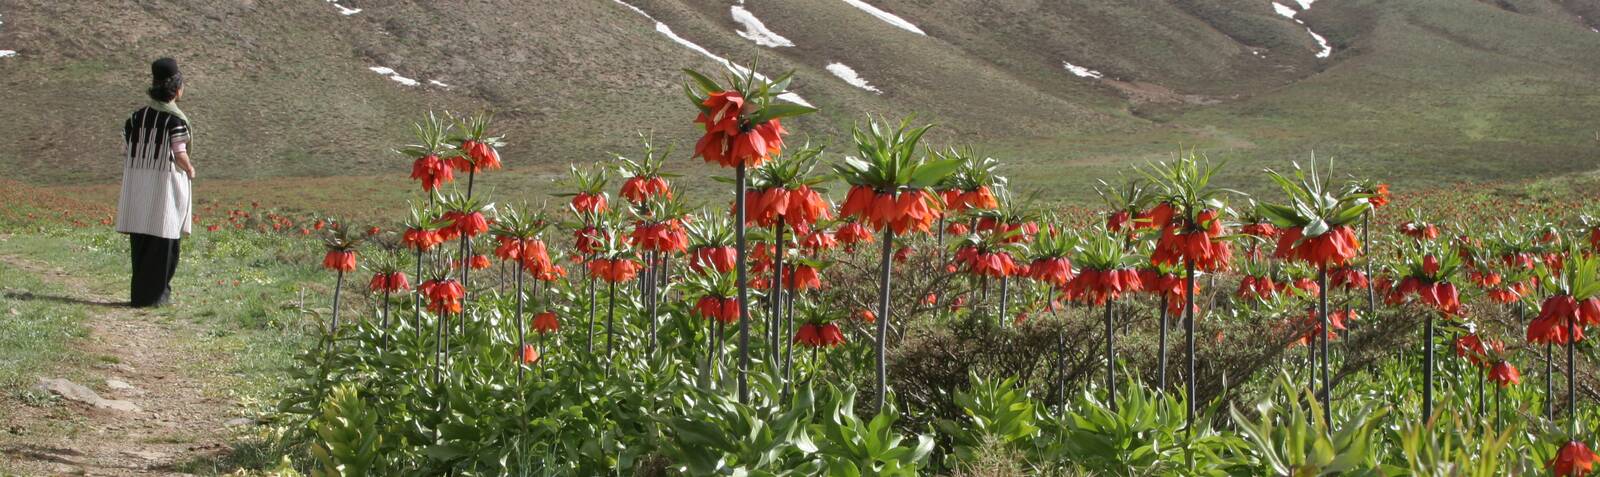 Llanura de tulipanes volcados